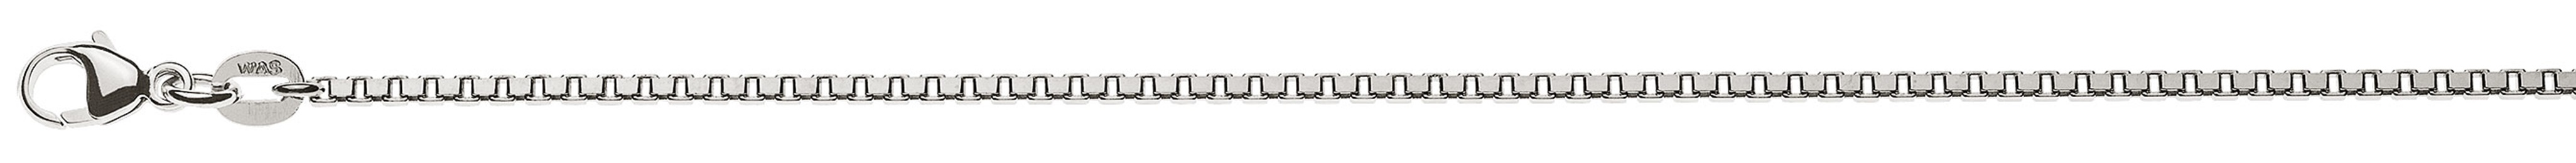 AURONOS Prestige Halskette Weissgold 18K Venezianerkette diamantiert 55cm 1.6mm